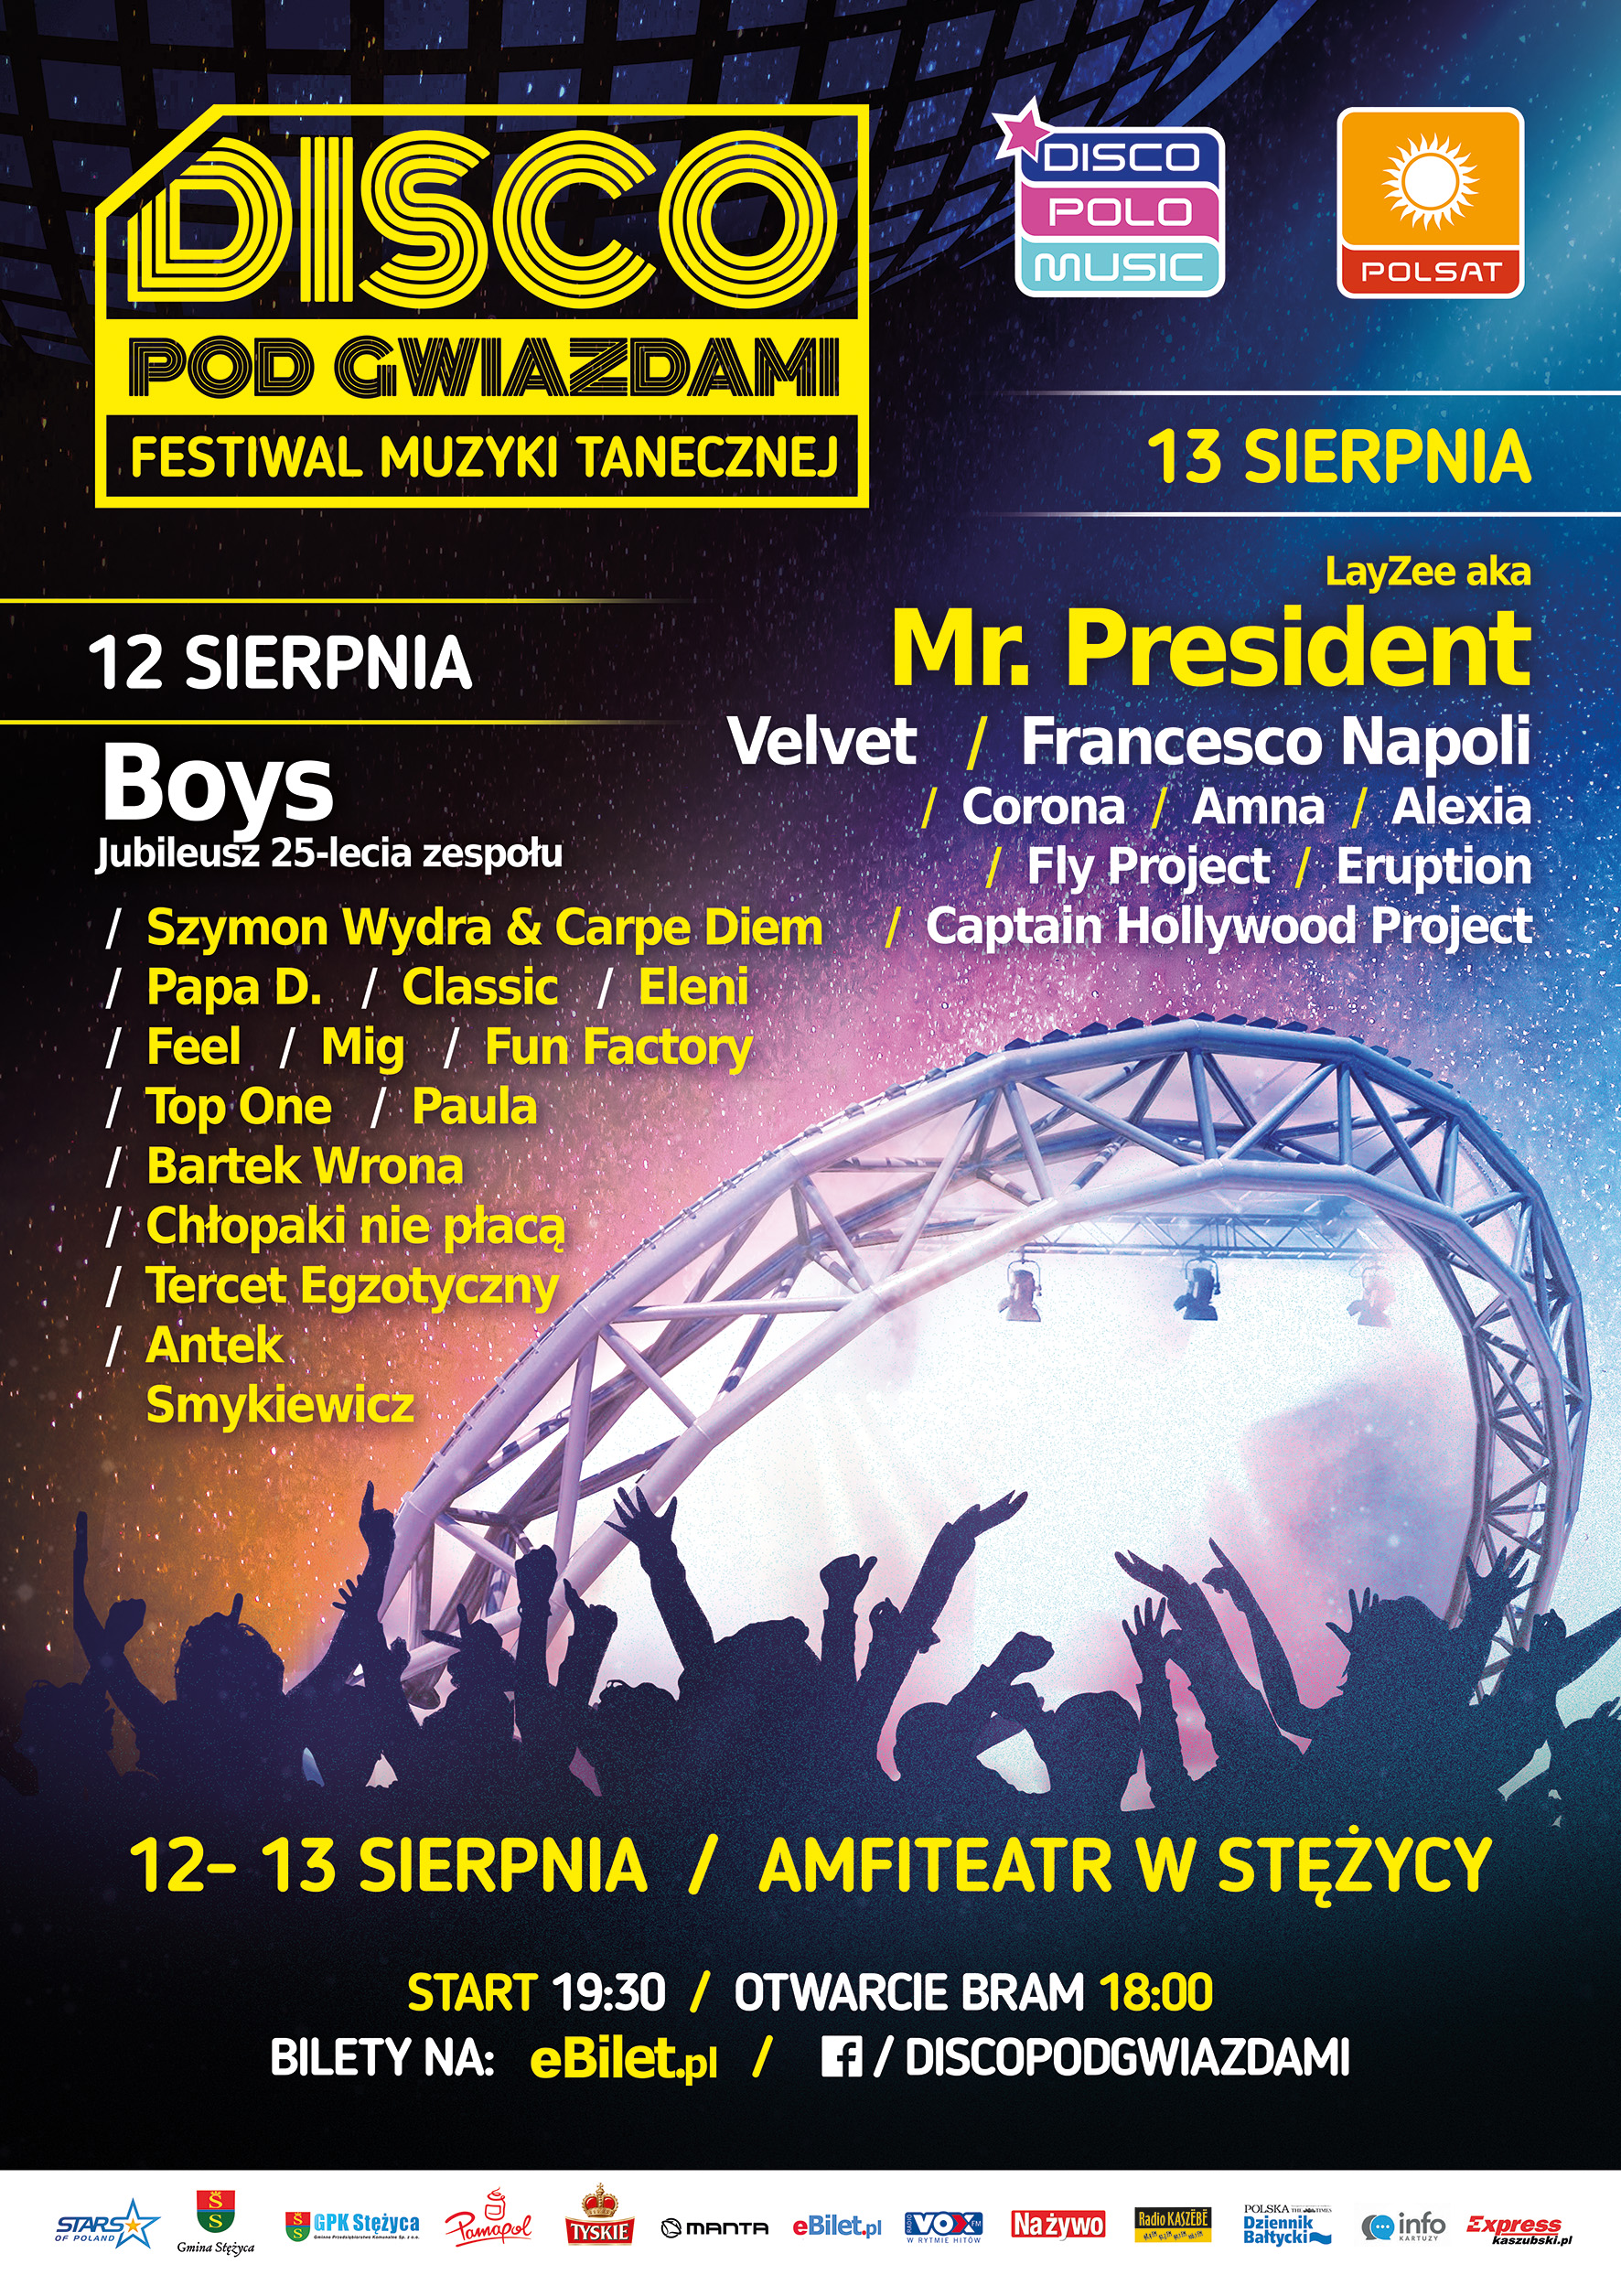 Disco pod Gwiazdami 12-13 sierpnia 2016